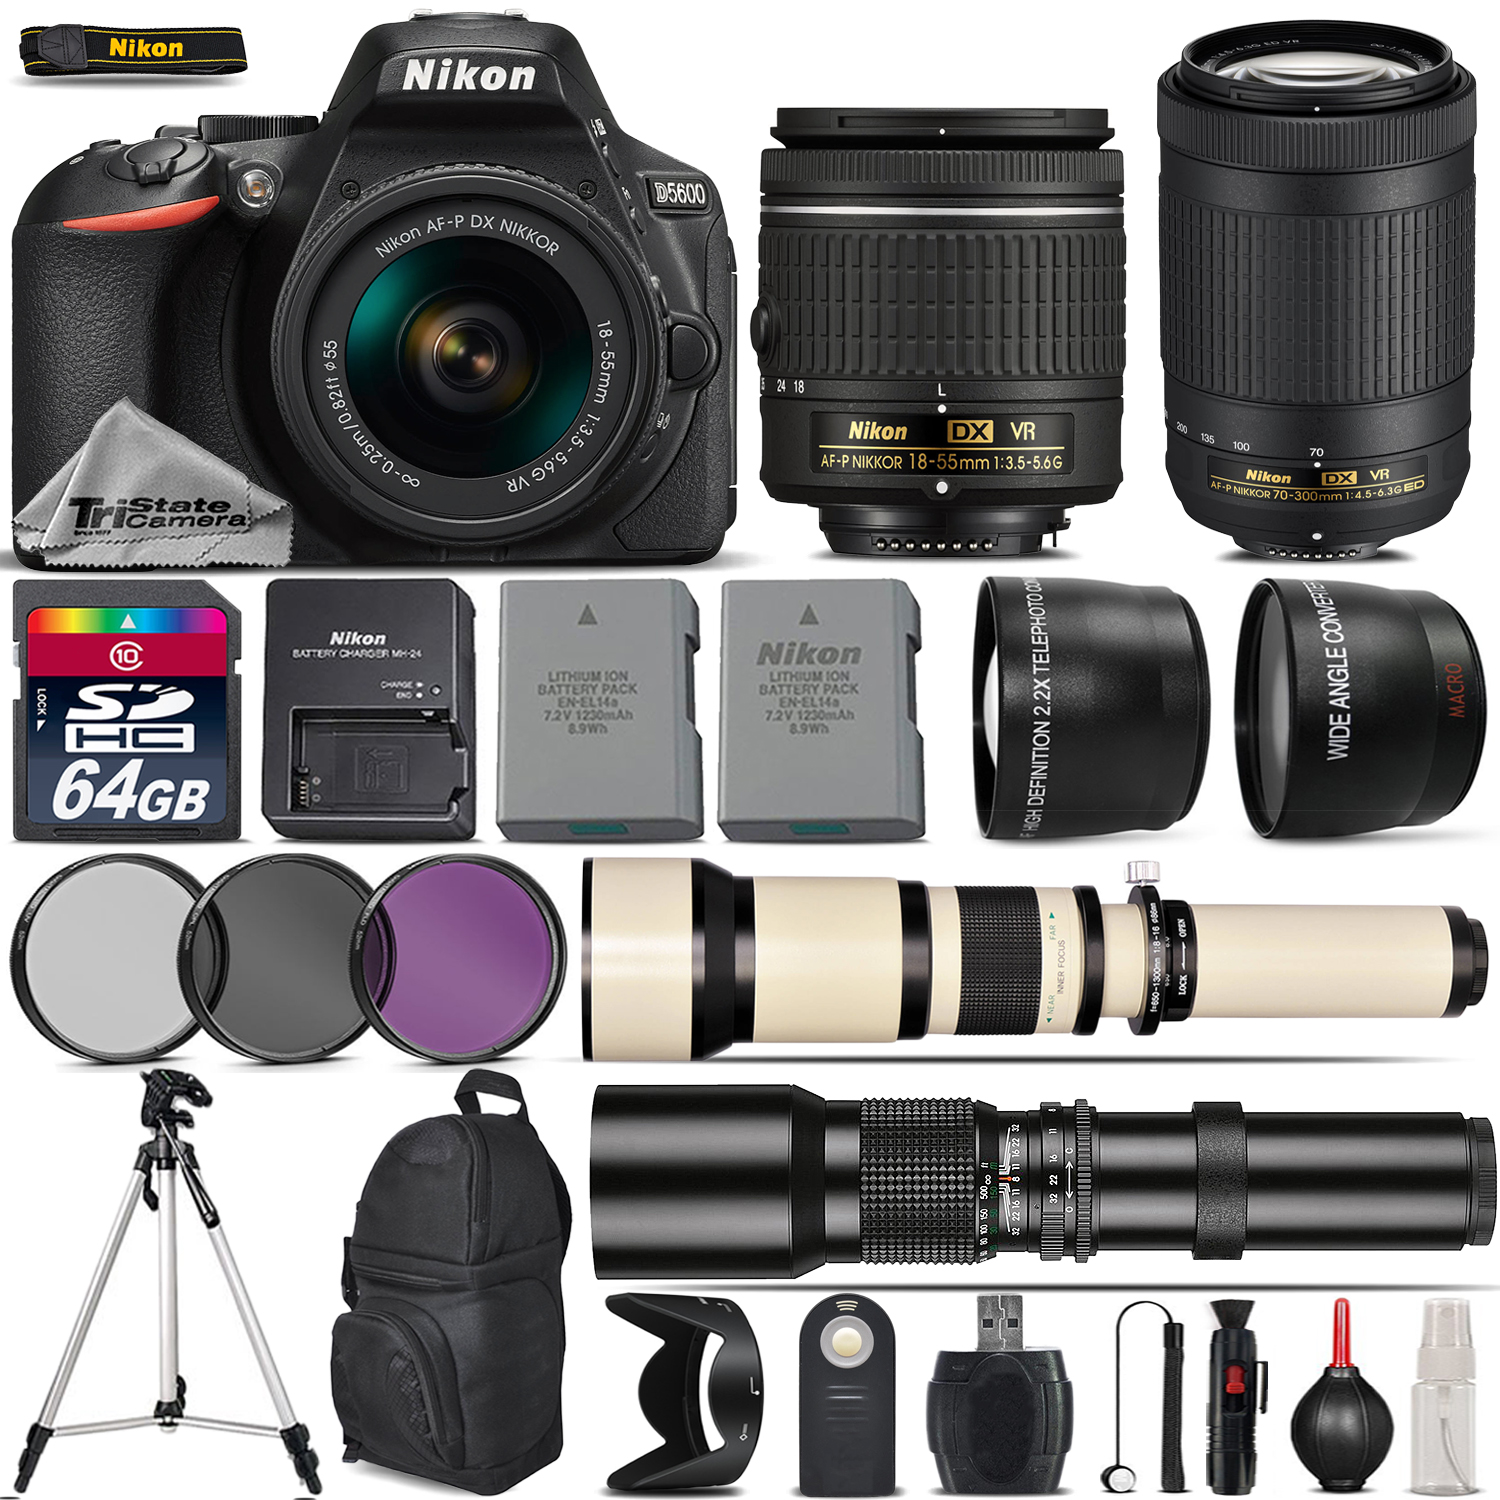 D5600 DSLR Camera + 18-55mm VR + Nikon 70-300mm VR+ 650-1300mm + 500mm *FREE SHIPPING*